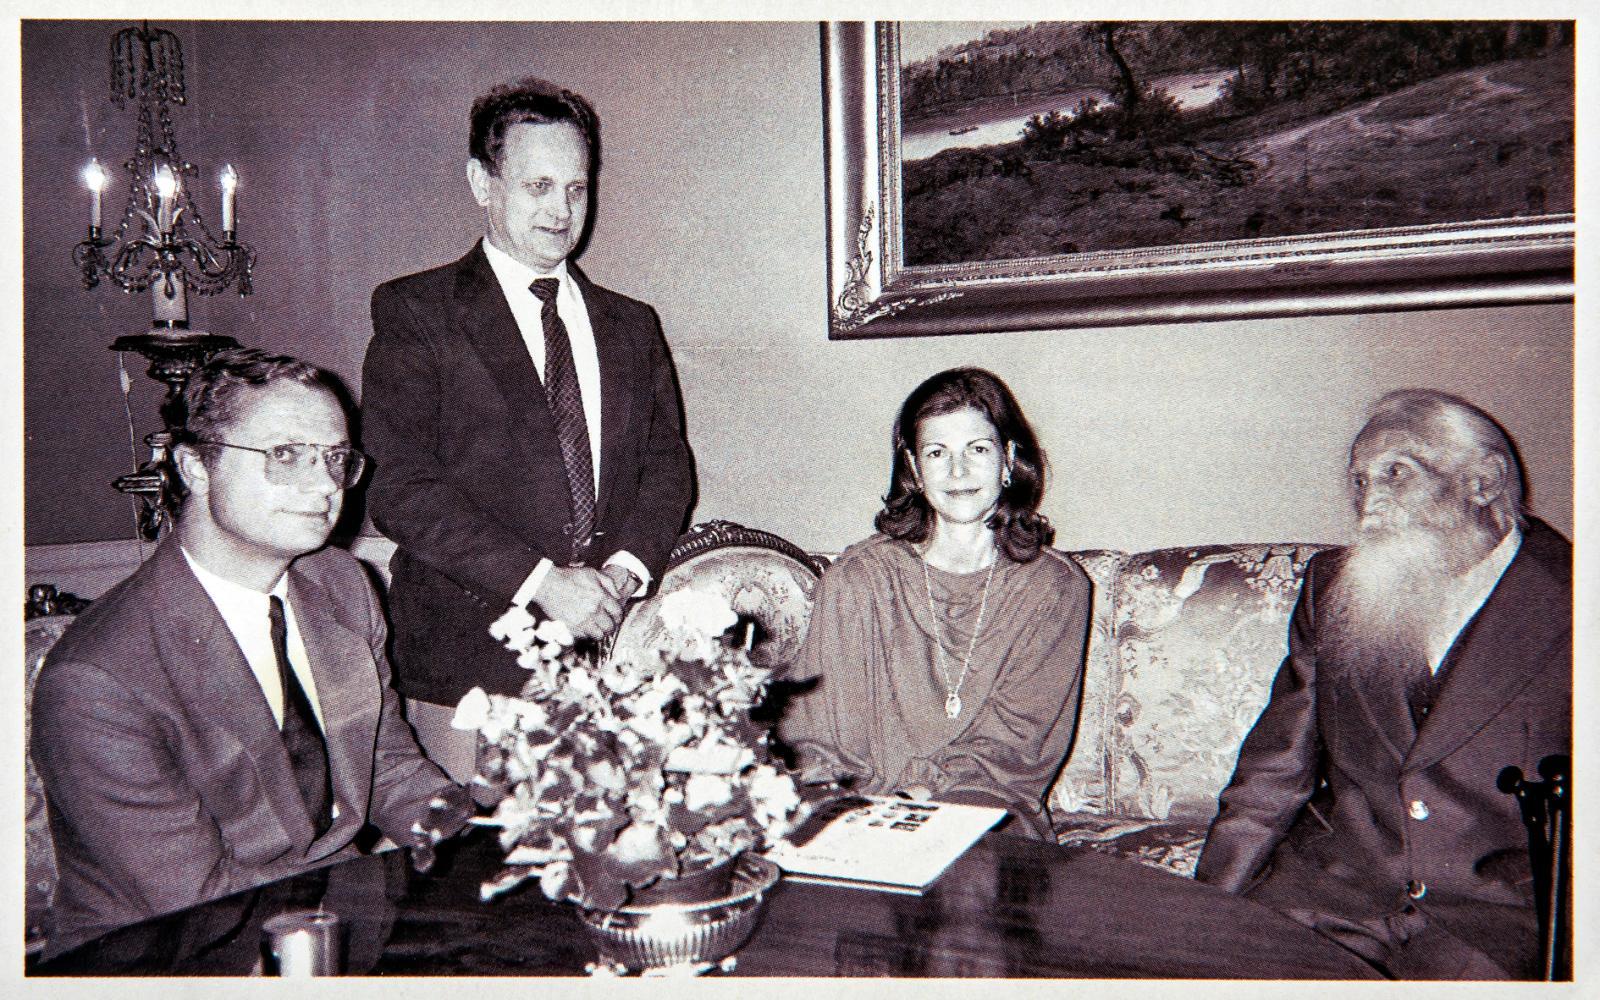 På kungliga slottet i Stockholm. Evan Ljunggren hos kung Carl XVI Gustaf och drottning Slivia i samband med Gustaf "Stålfarfar" Håkanssons 100-årsdag 1985.